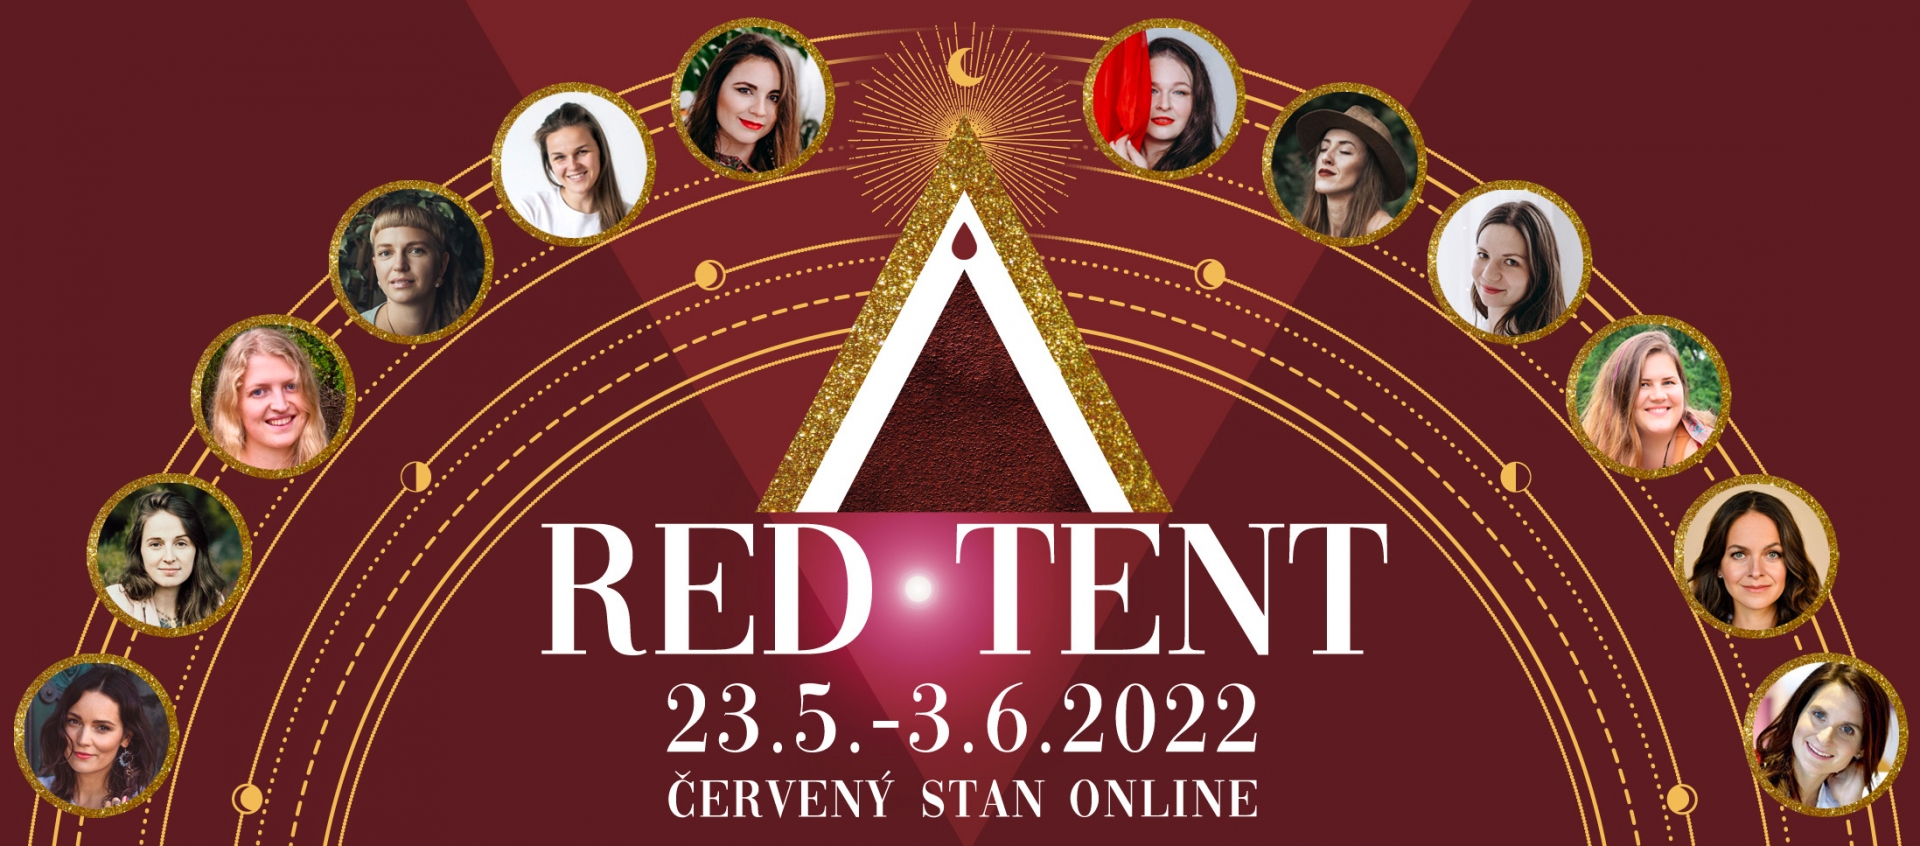 Červený stan - online konference